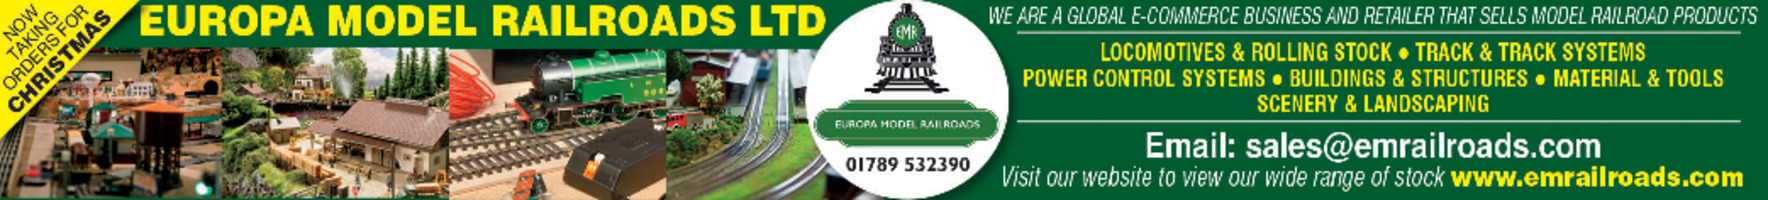 Europa Model Railroads Advert